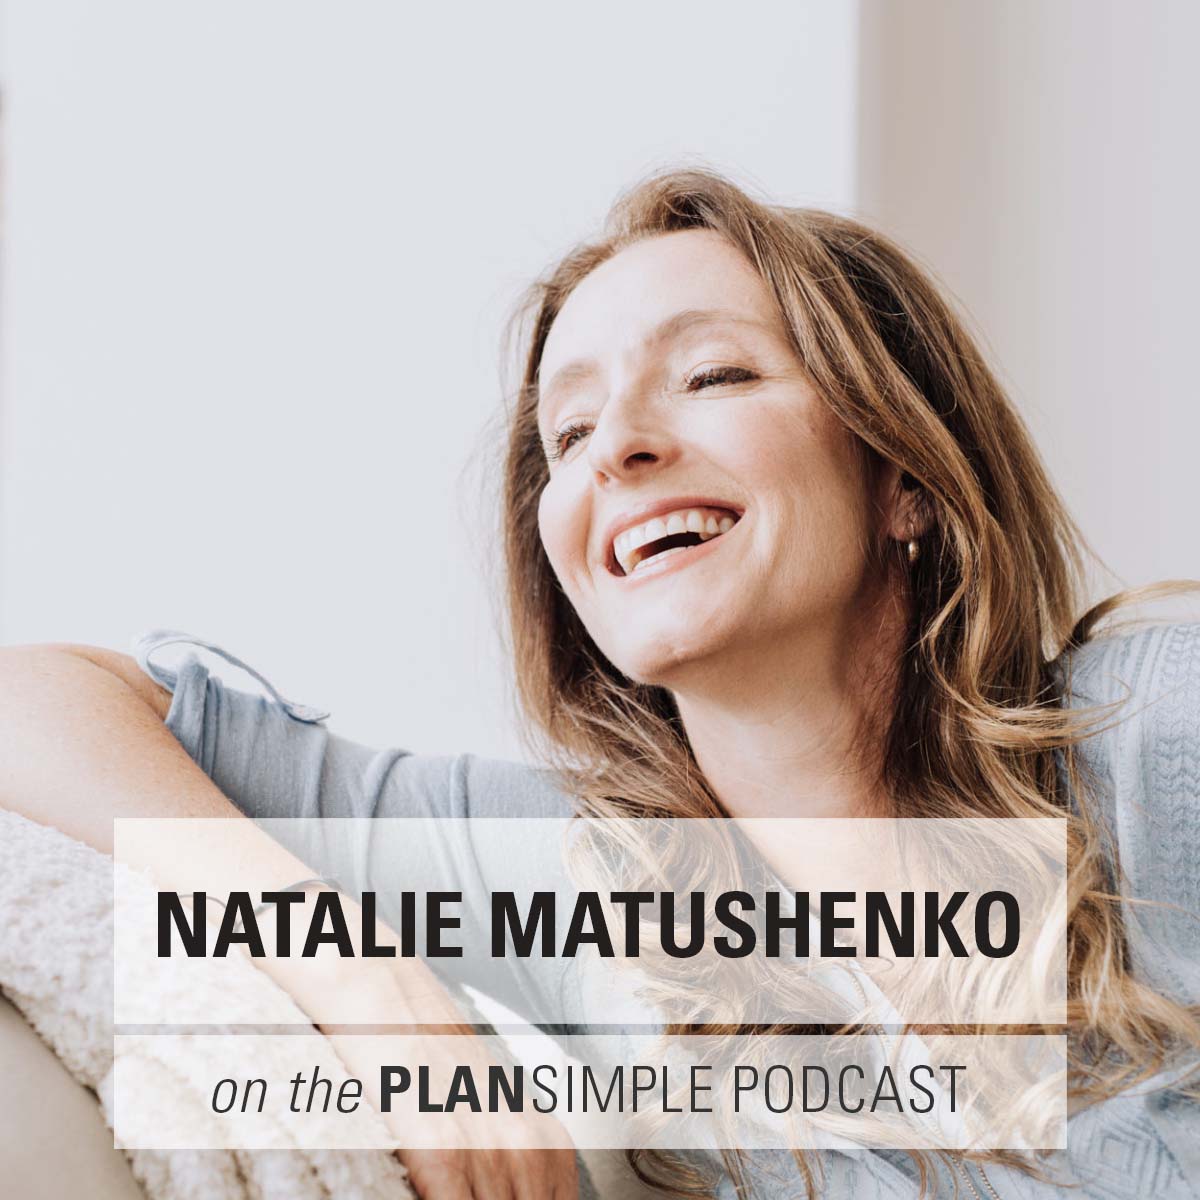 What’s Your Purpose? With Natalie Matushenko